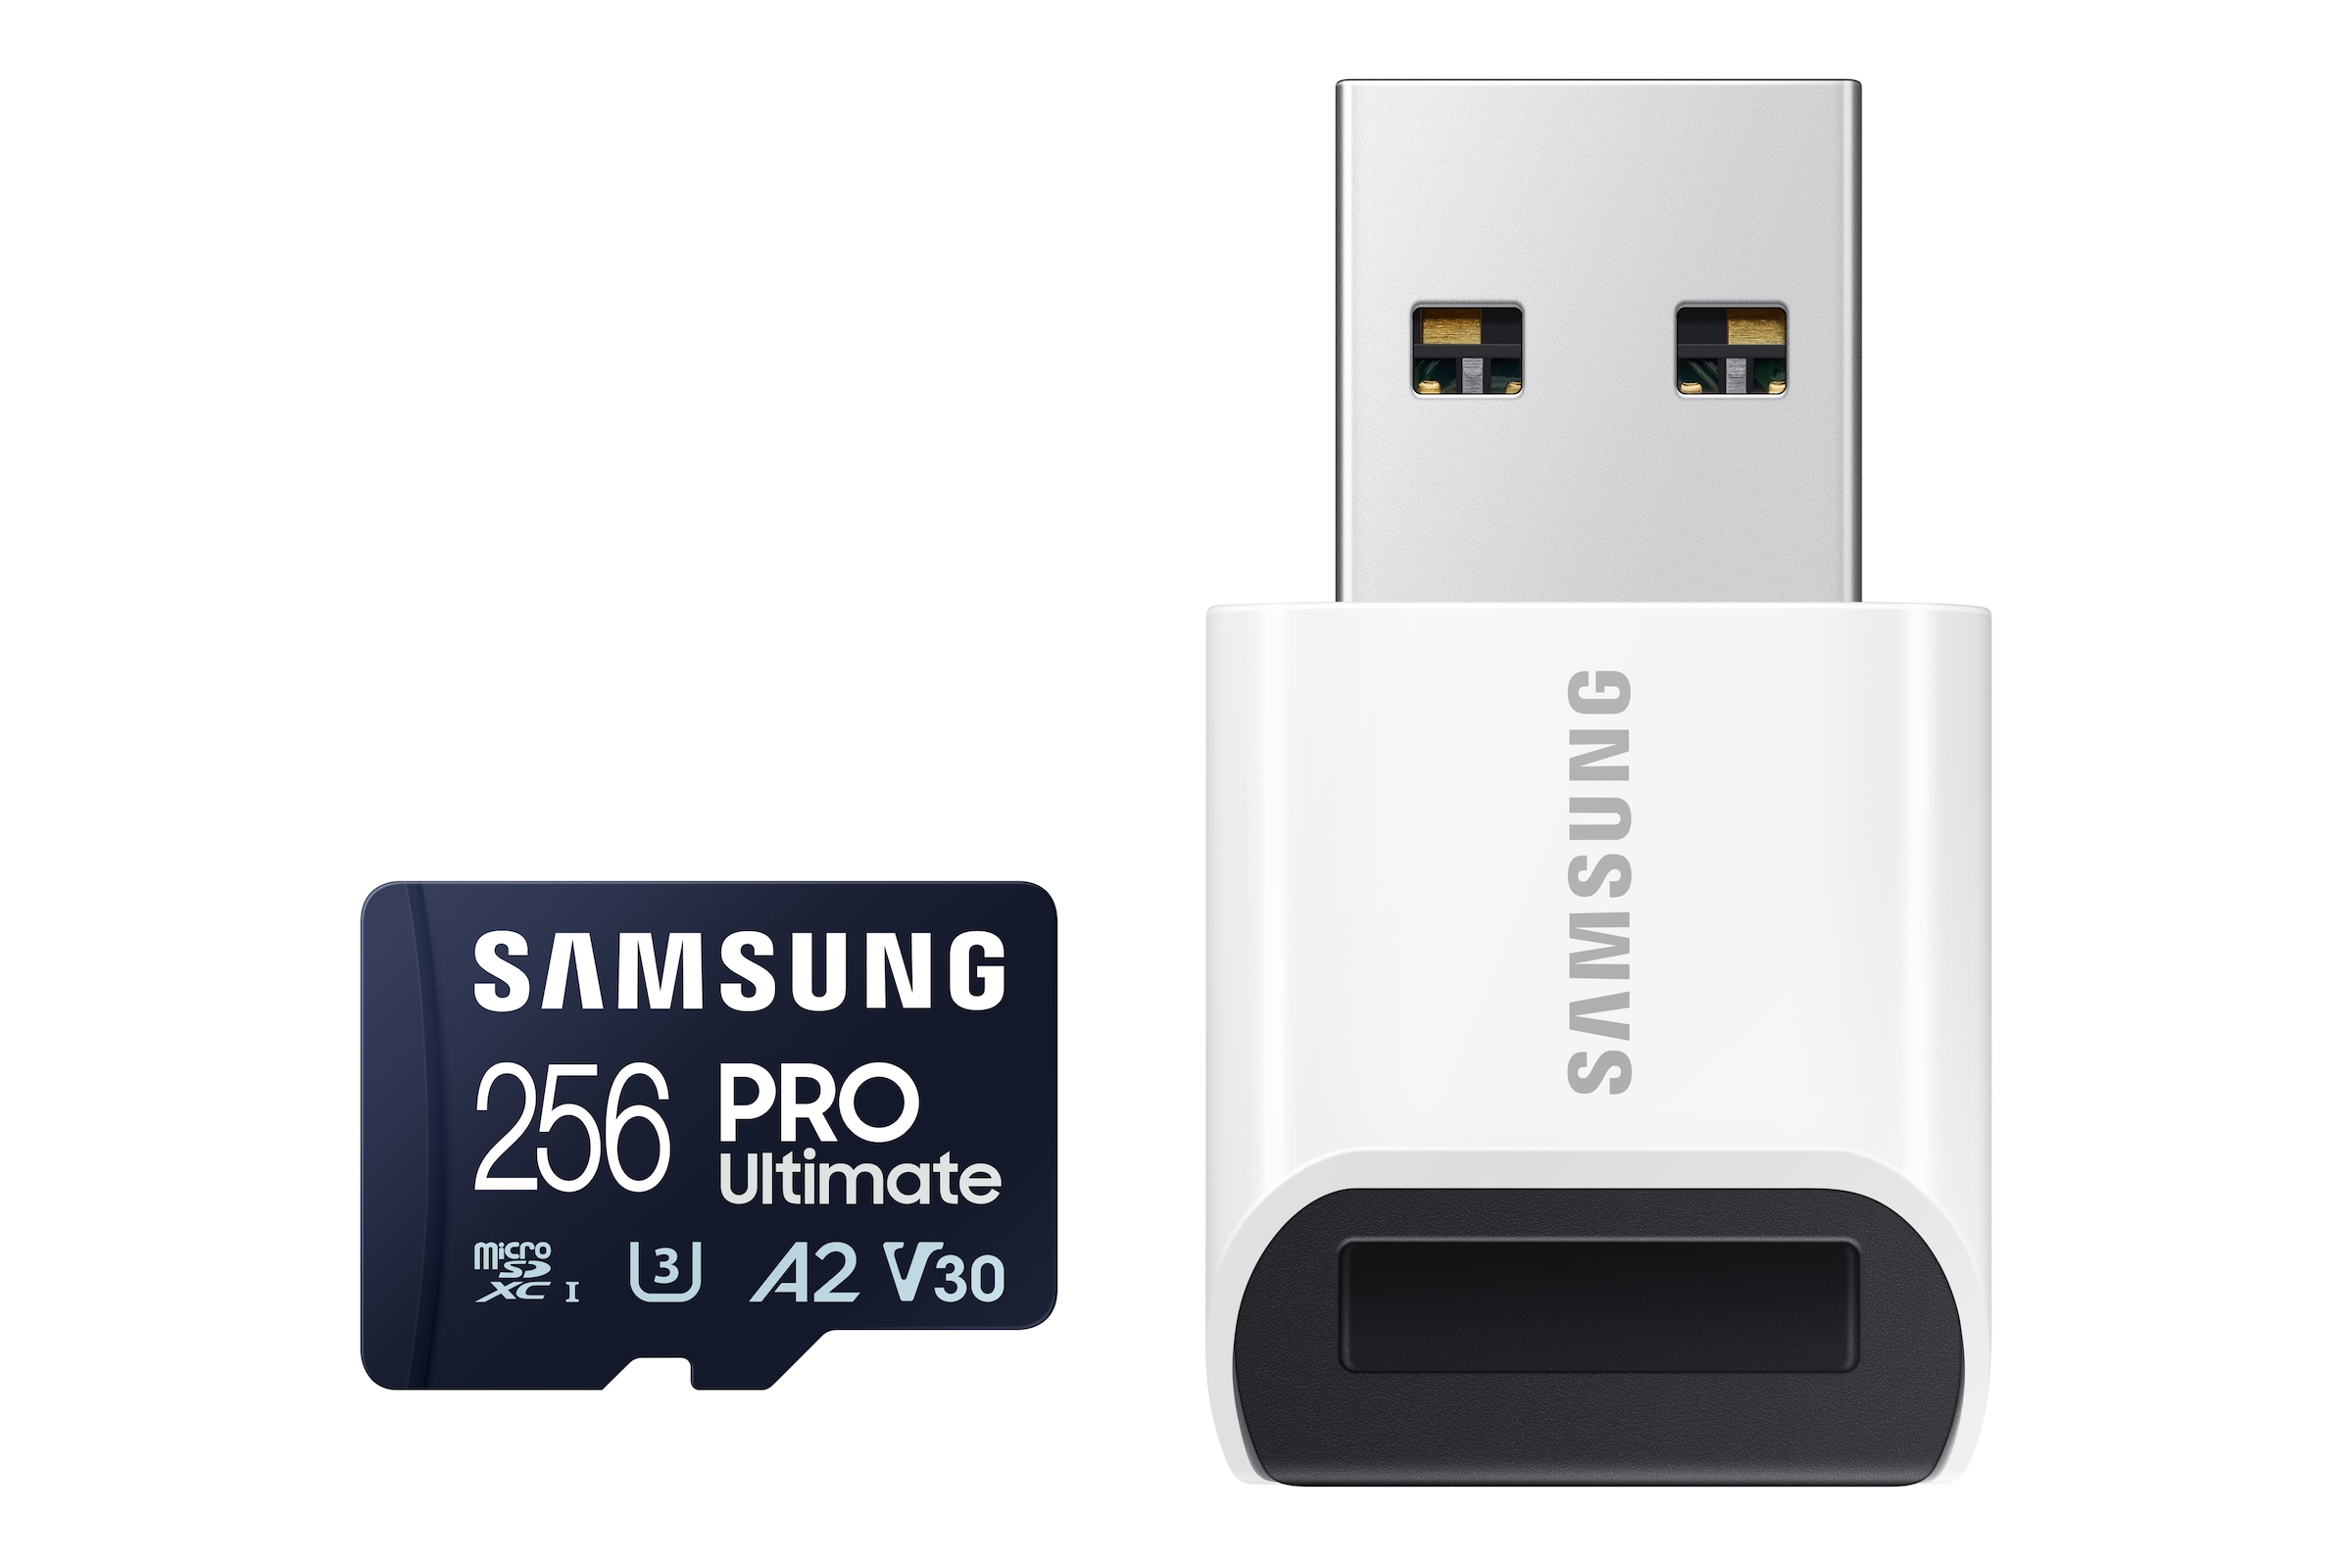 Samsung Speicherkarte »Pro Ultimate MicroSD«, (200 MB/s Lesegeschwindigkeit), mit USB-Kartenleser